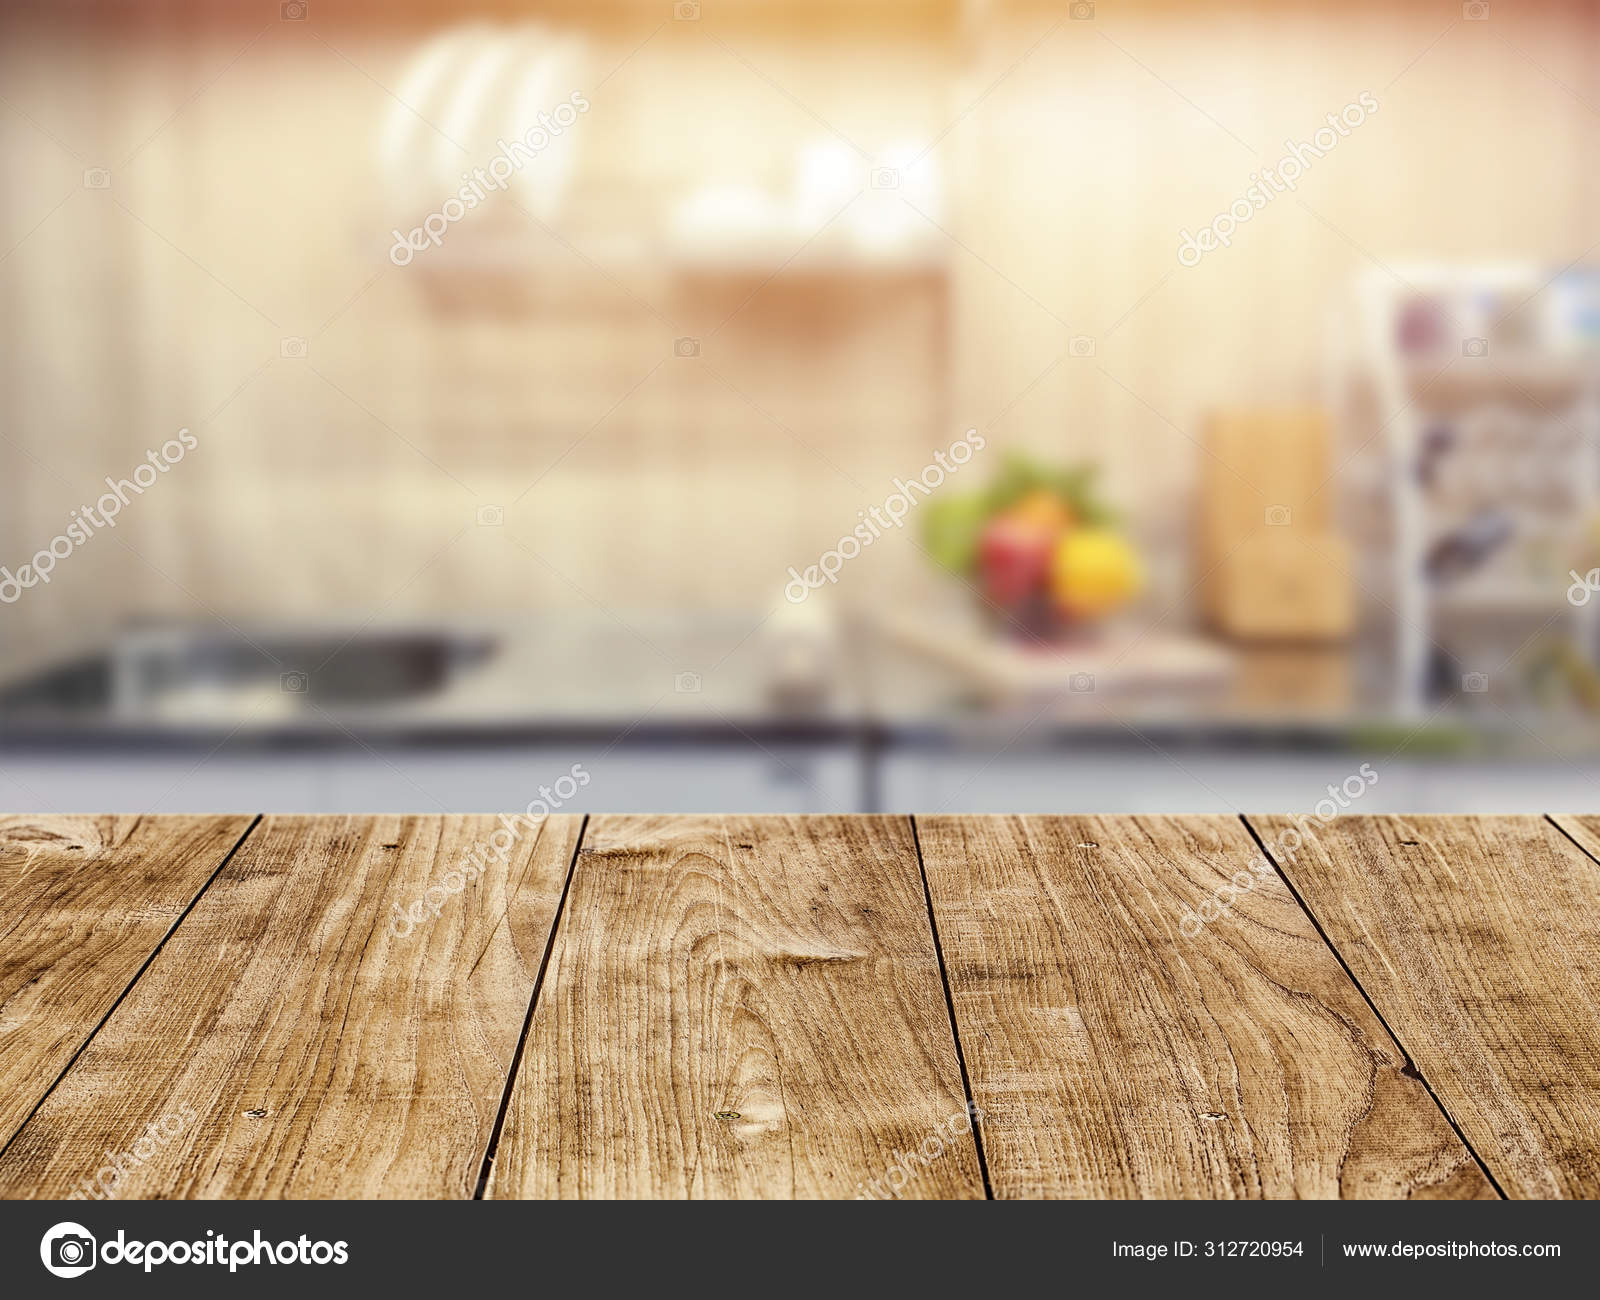 Mặt bàn gỗ trong nhà bếp là nơi chính để ăn uống và trò chuyện với gia đình và bạn bè. Với một mặt bàn đẹp, bạn có thể trang trí và thiết kế nó theo phong cách riêng của mình. Nhấn vào hình ảnh để tìm kiếm nguồn cảm hứng và ý tưởng cho một mặt bàn độc đáo.